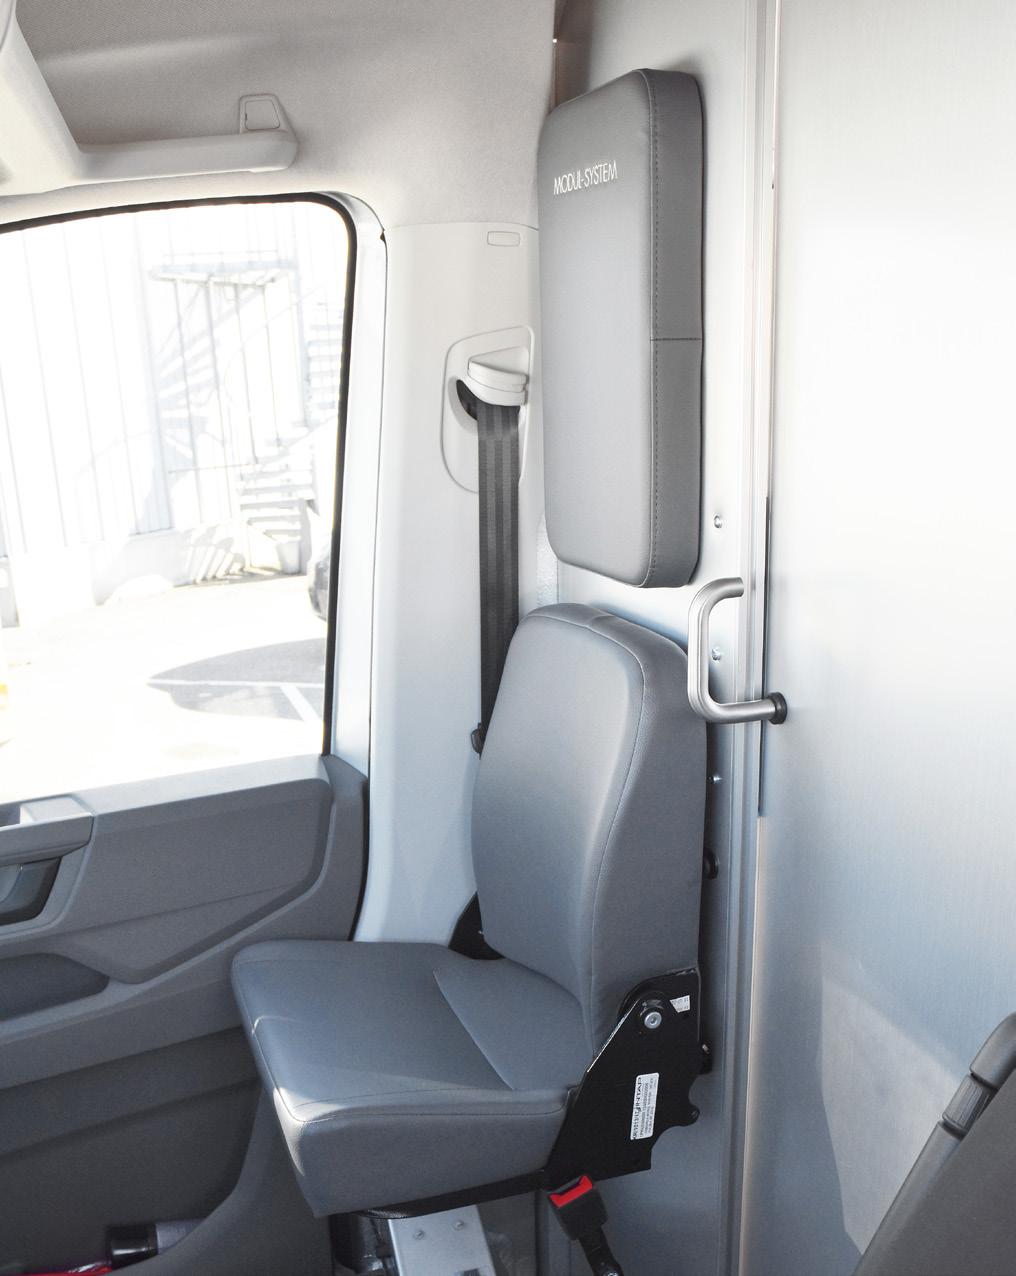 KLAPPSITZ Mit dem ergonomischen Klappsitz können Sie den Innenraum Ihres Fahrzeugs